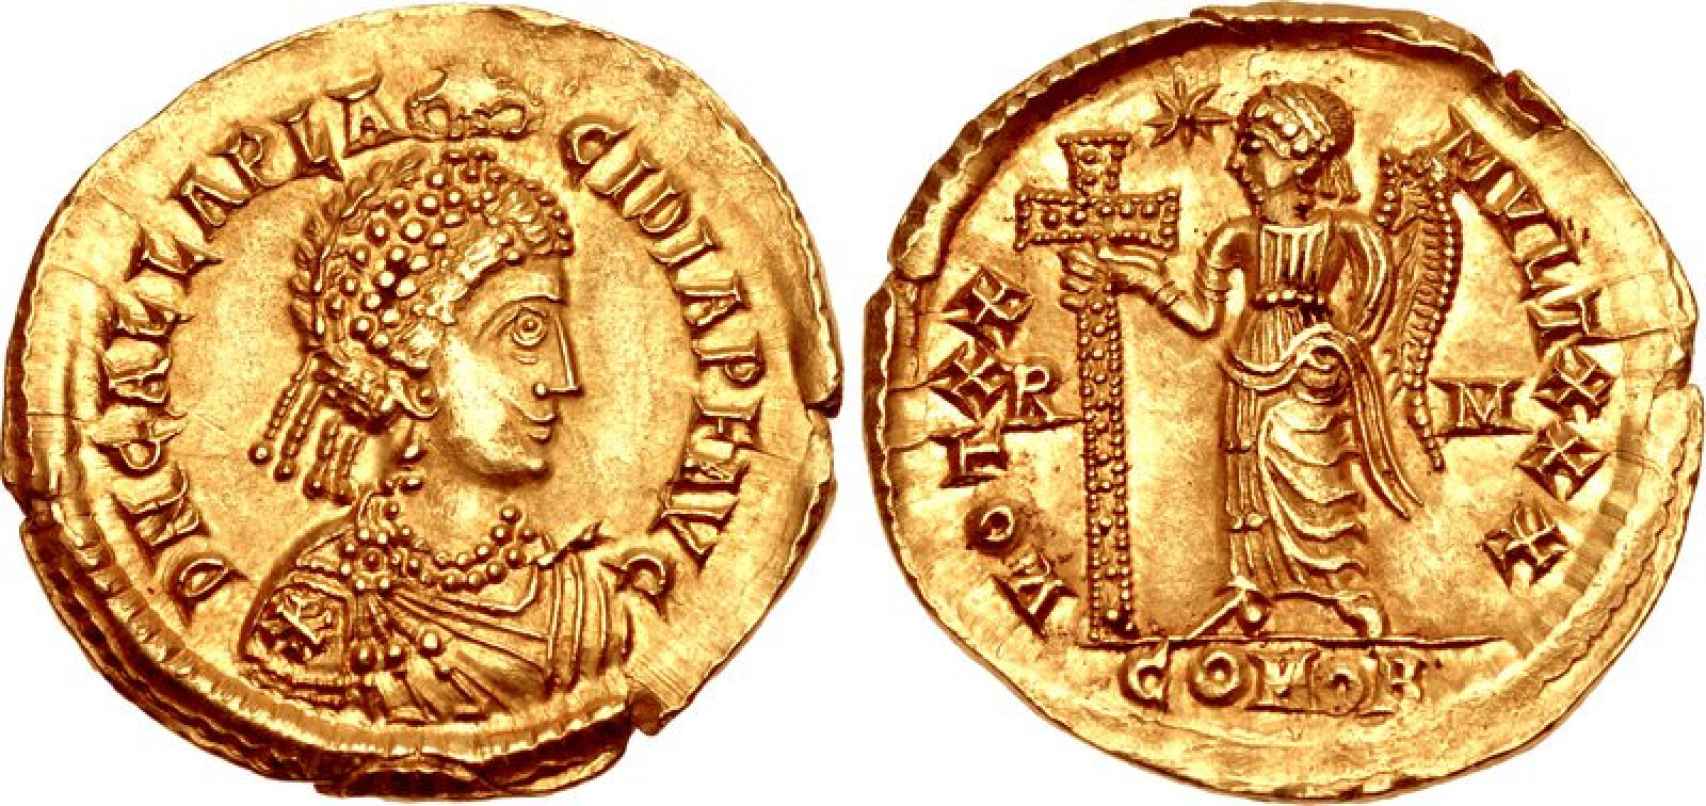 Sólido de oro de Gala Placida. Años 425-426 d.C.